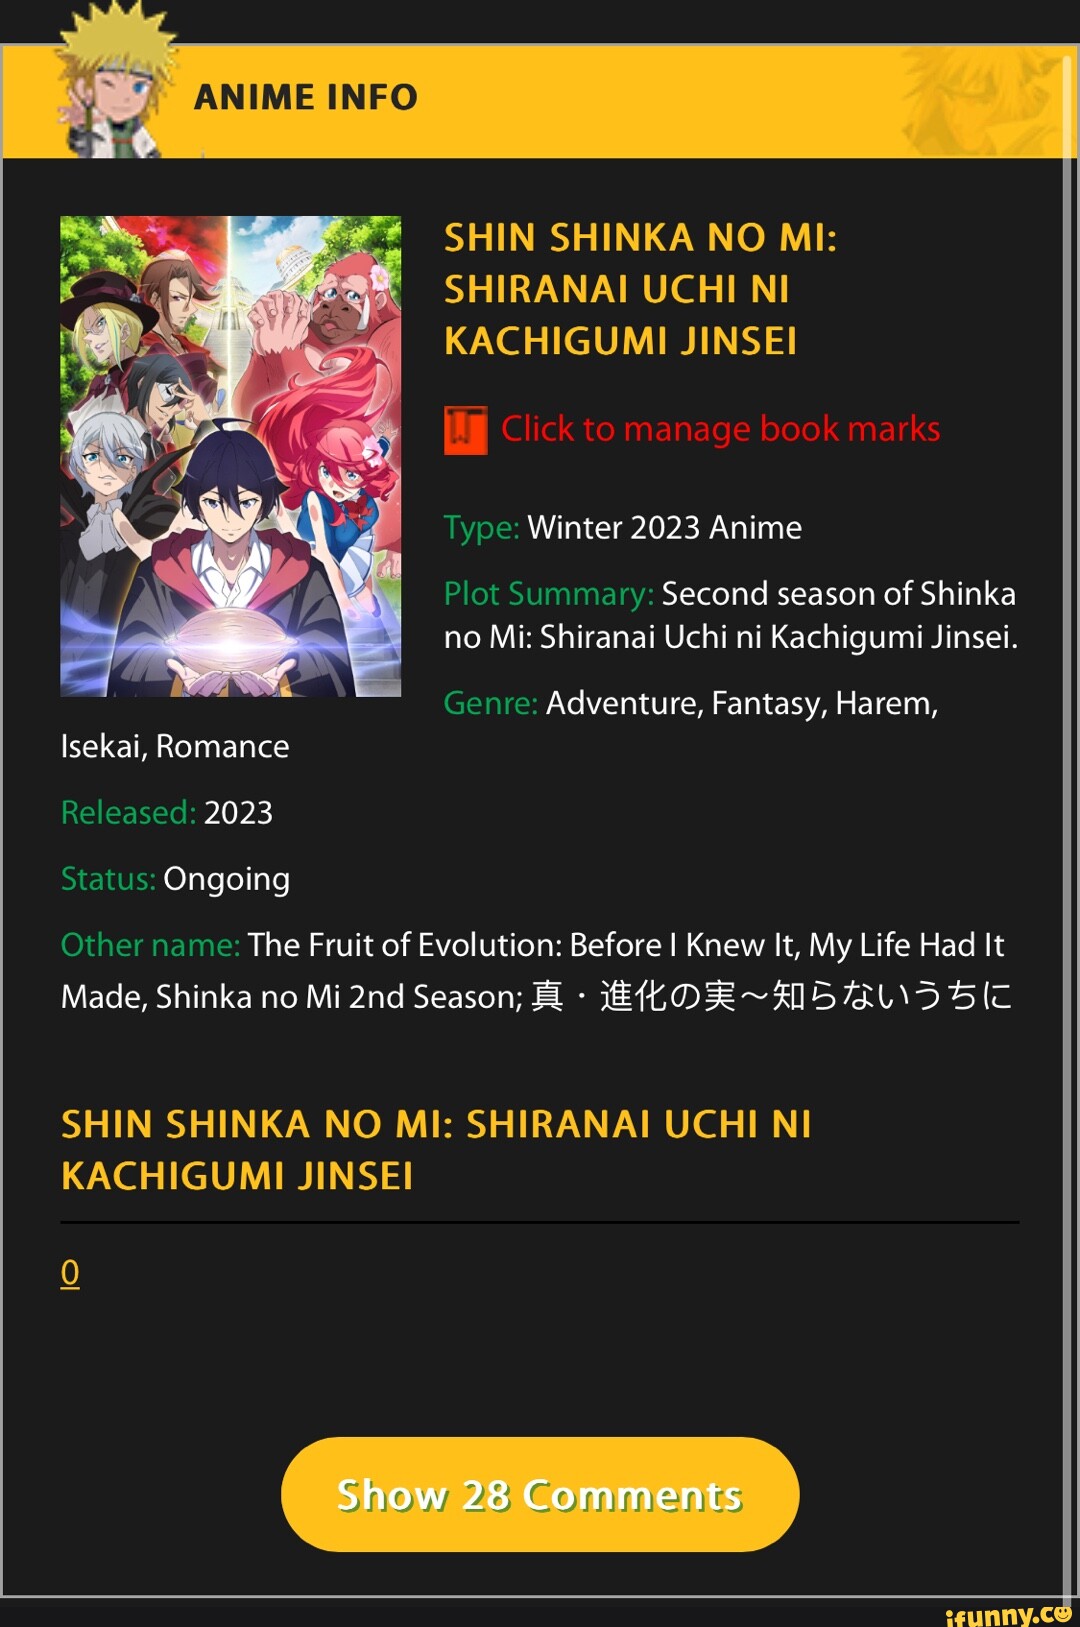 Shin Shinka no Mi: Shiranai Uchi ni Kachigumi Jinsei - 2ª